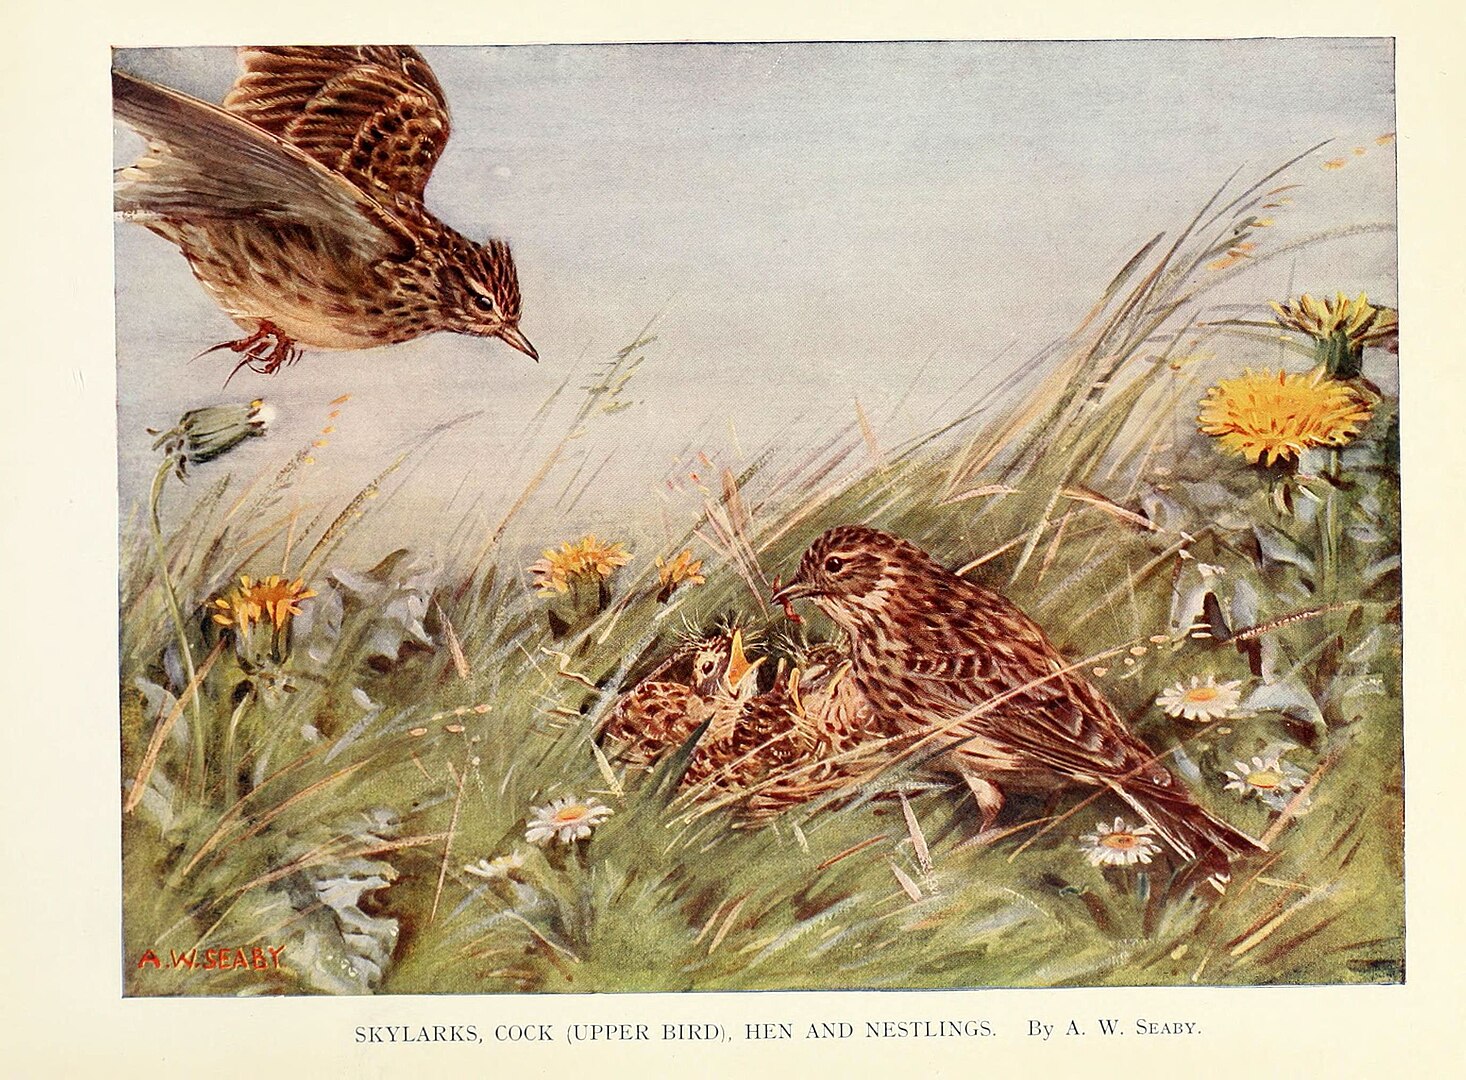 An illustration of birds nestled in grass